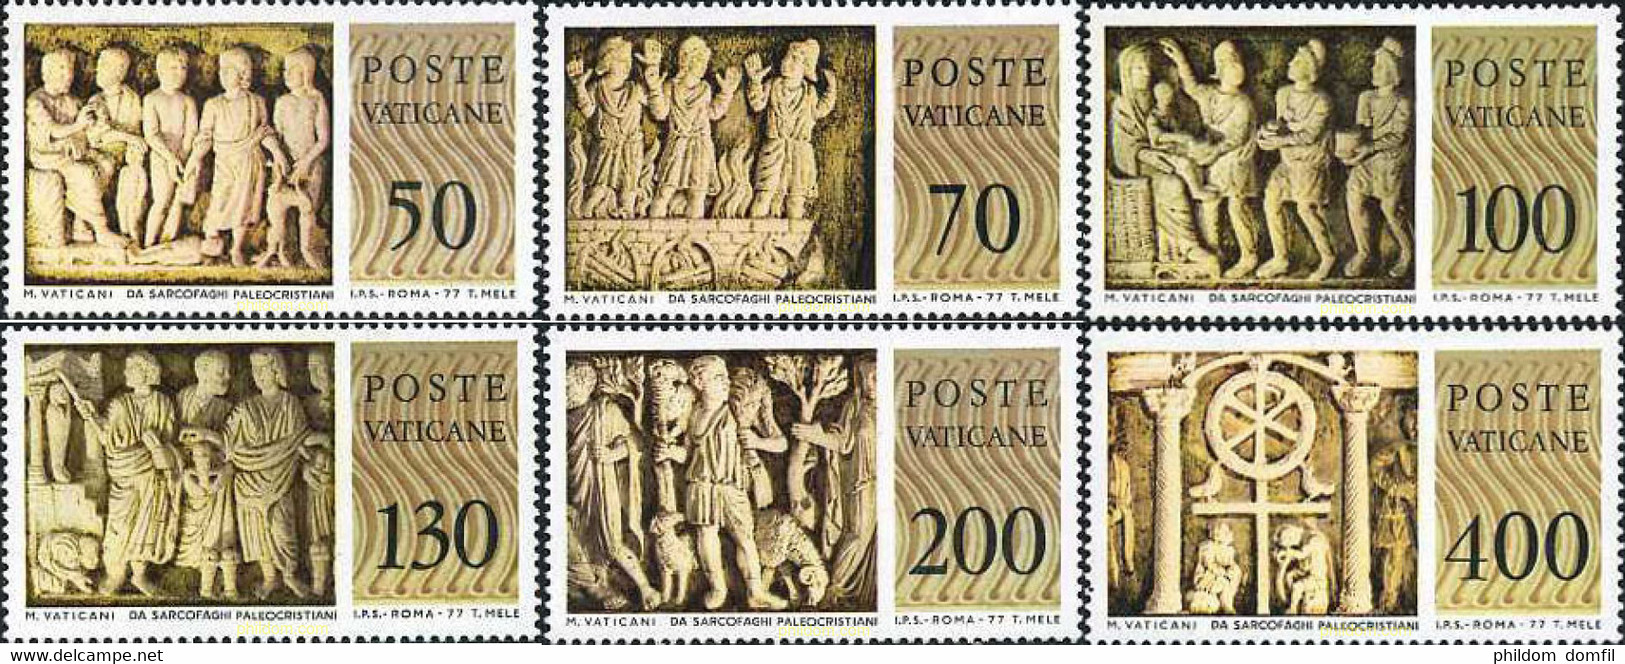 116601 MNH VATICANO 1977 MUSEO DEL VATICANO. BAJO-RELIEVES DE SARCOFAGOS PALEOCRISTIANOS - Used Stamps